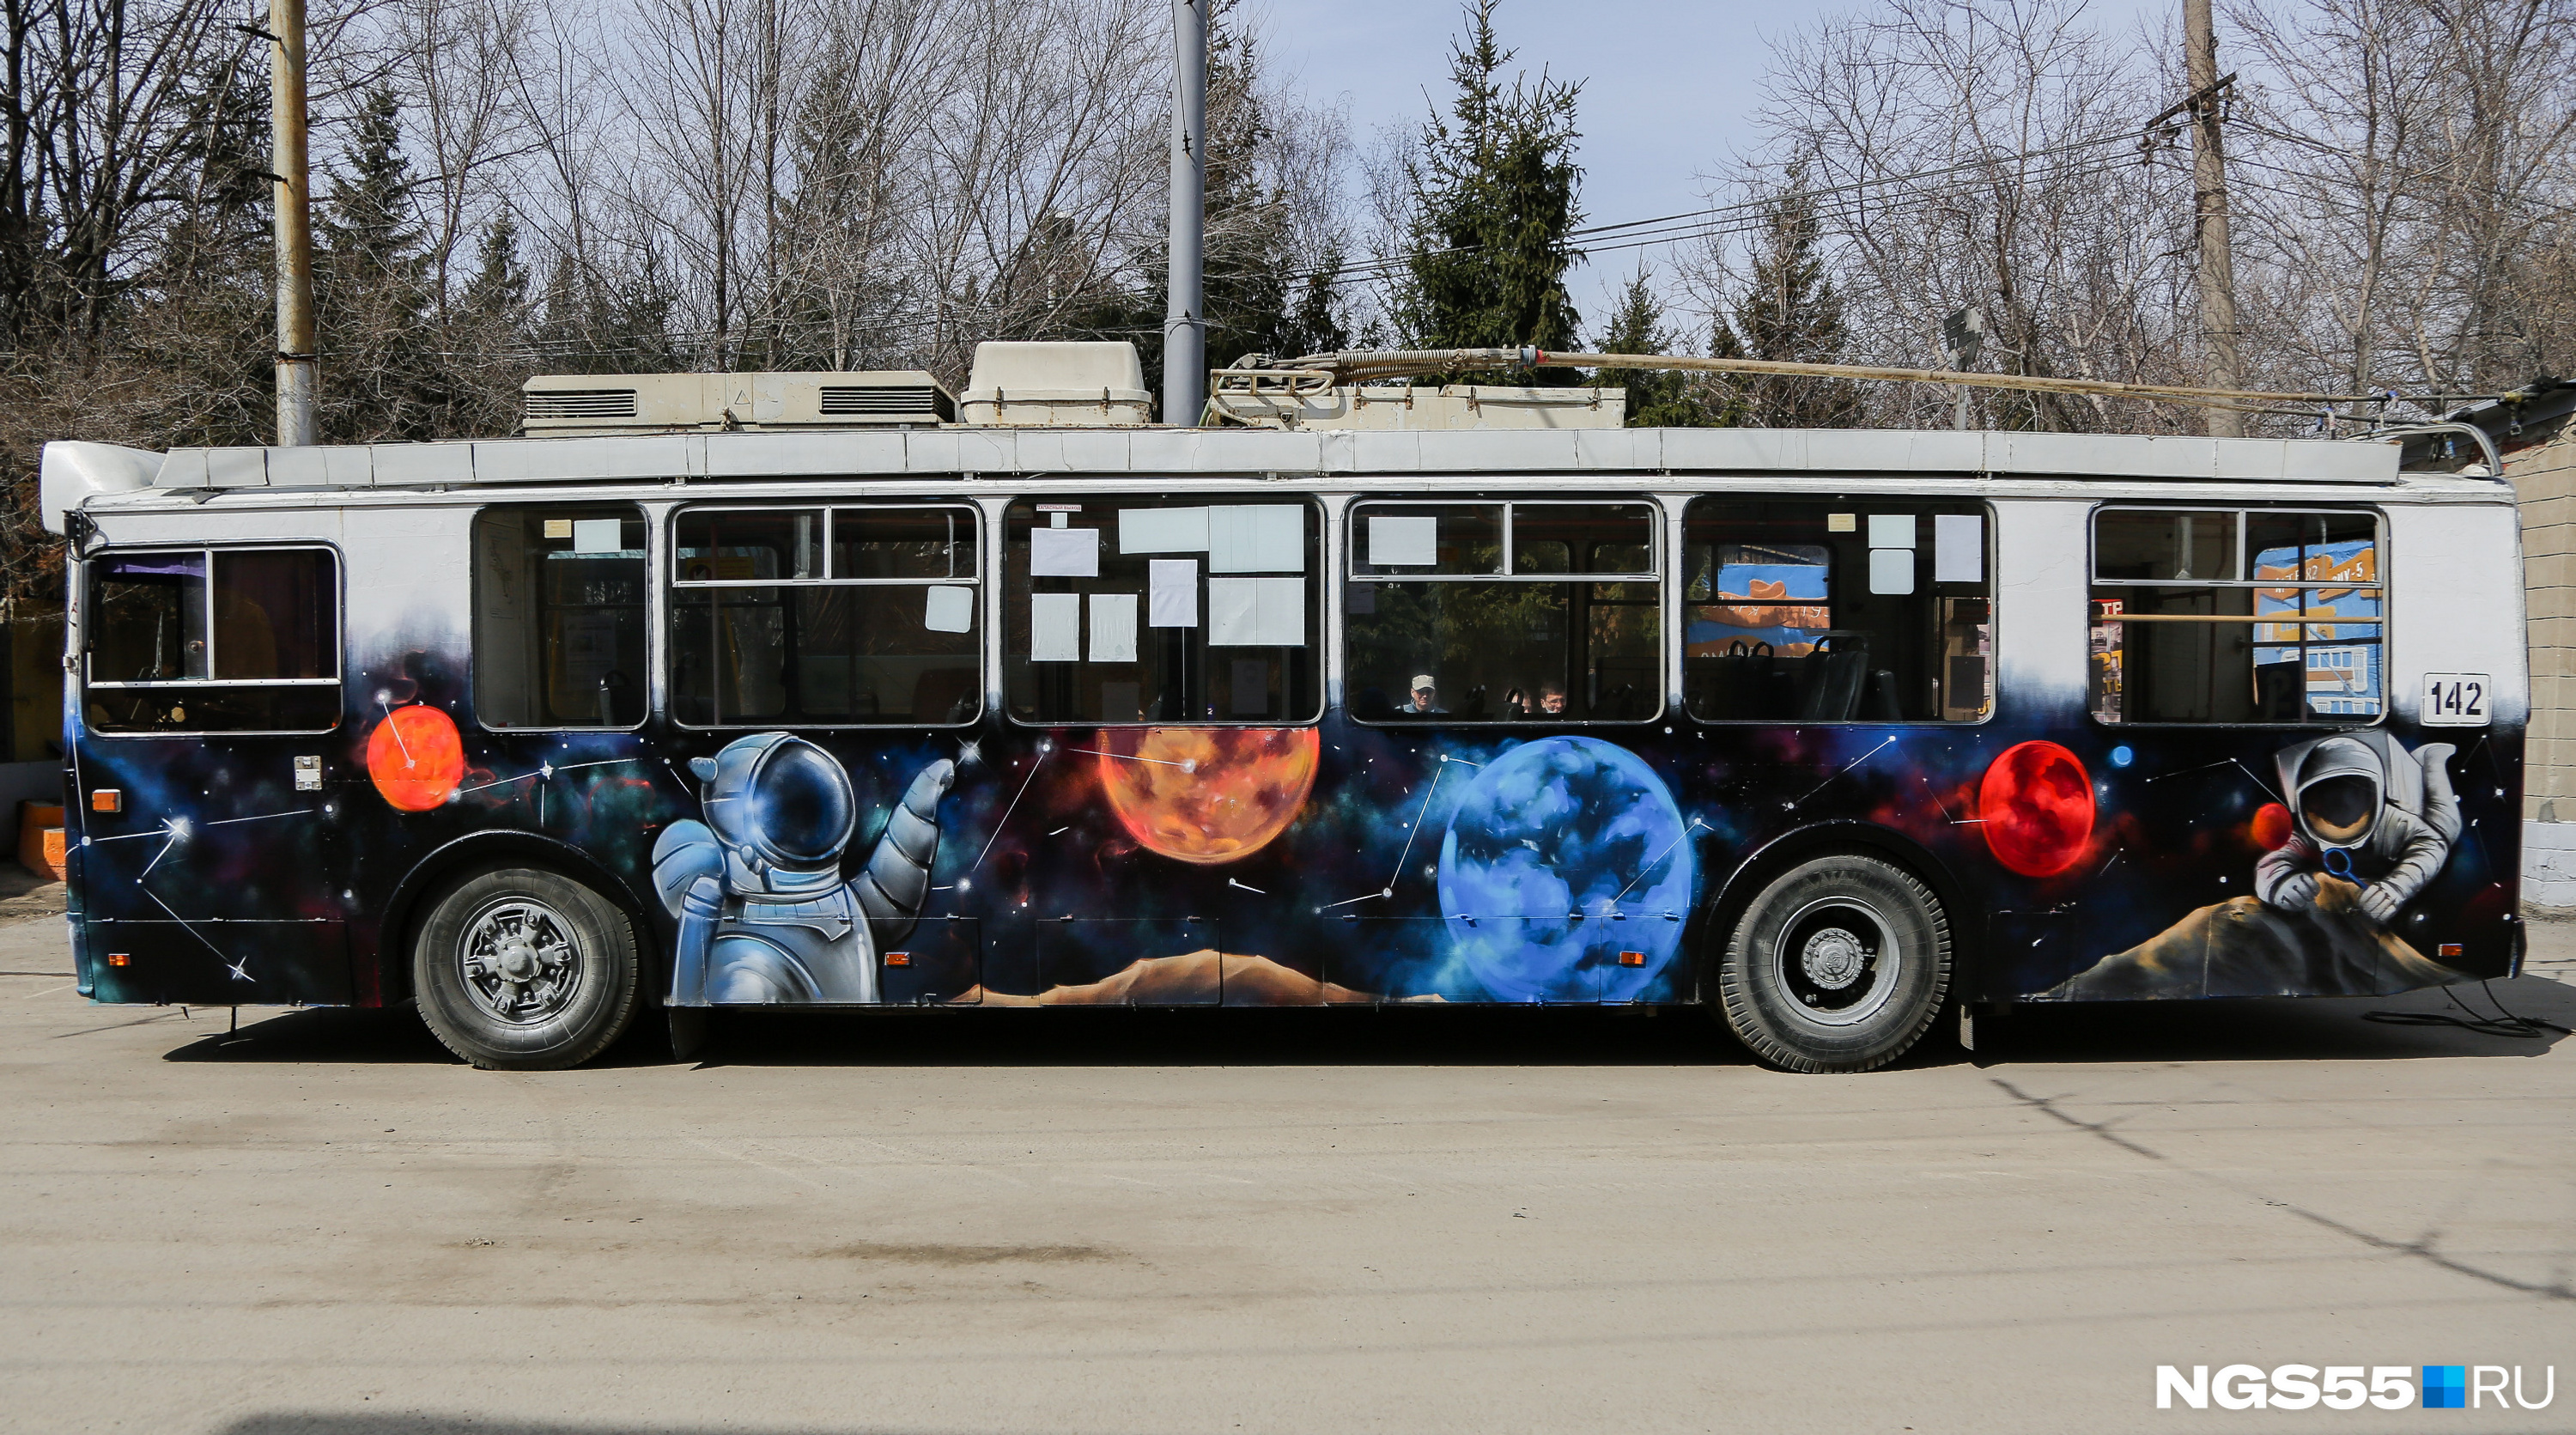 На вечерних улицах Омска такой троллейбус будет смотреться очень эффектно. Сразу после финальных штрихов он отправился по маршруту в Нефтяники